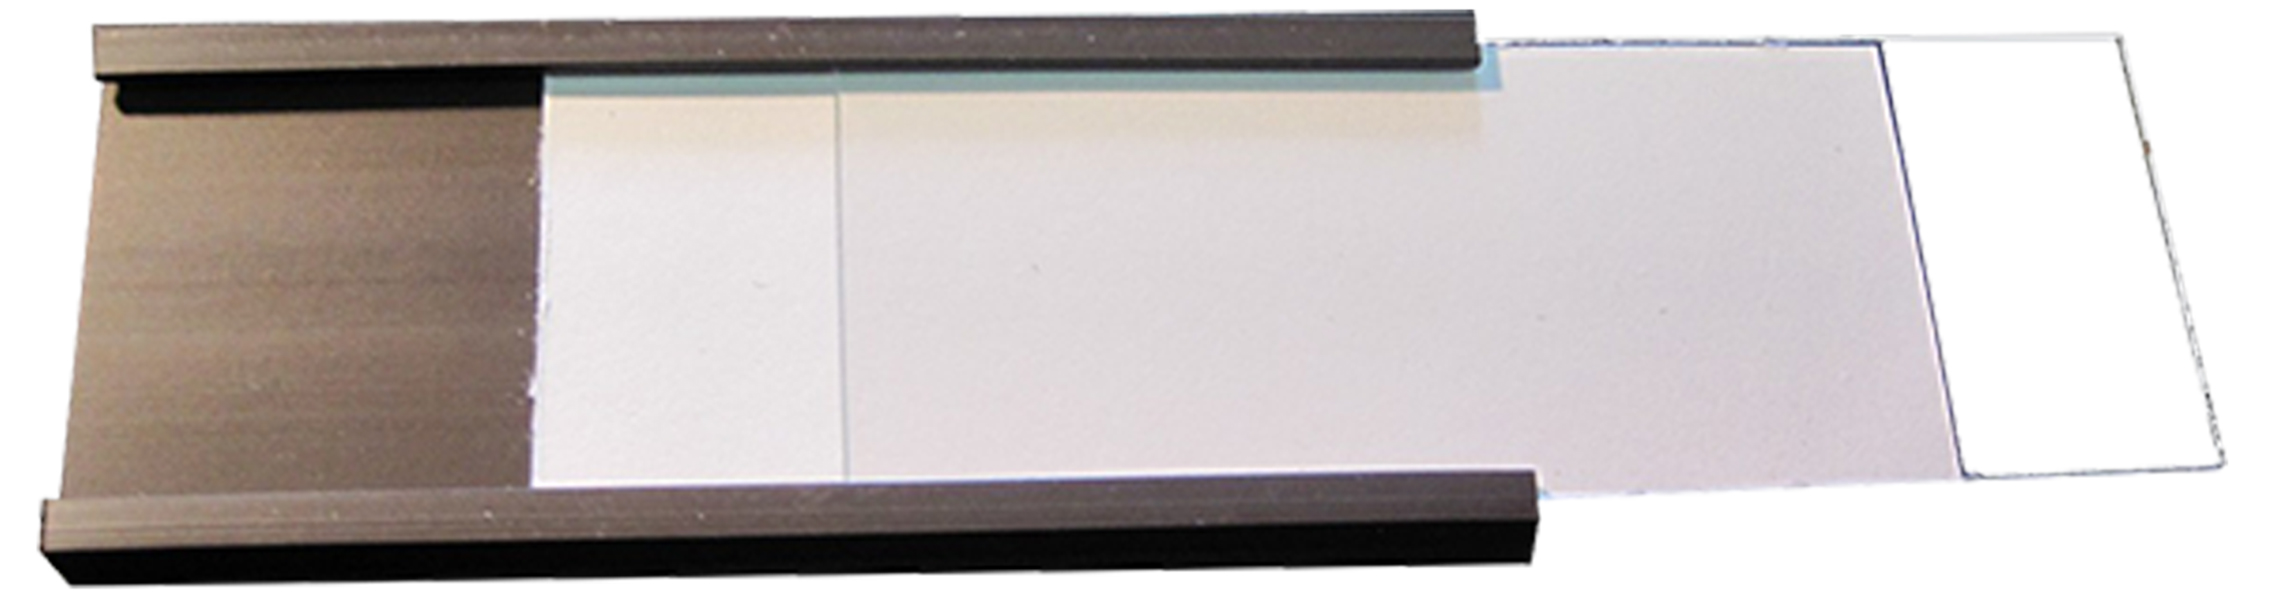 Porta etichetta magnetico Profilio A “C”, Profili a C, Etichette Magnetiche tipo C complete di cartoncino e PVC, Porta Etichette Magnetiche a C in Rotolo, profilo a C 